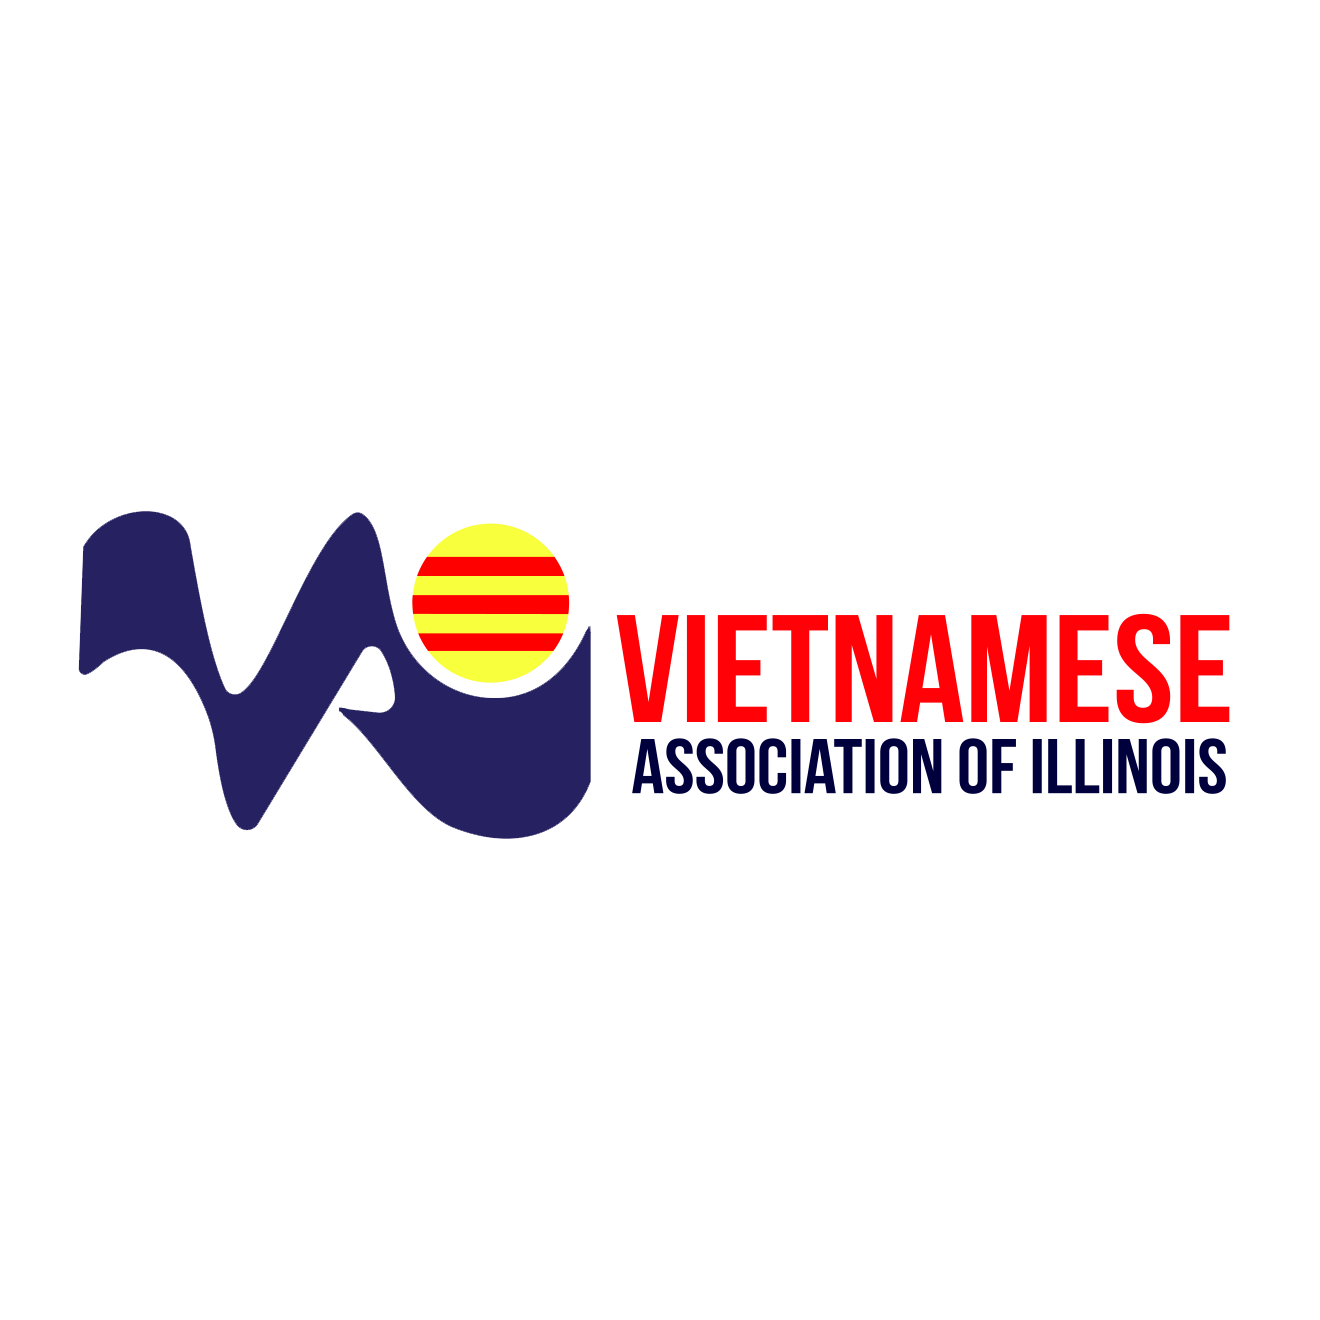 Vietnamese Organizations in Chicago Illinois - Vietnamese Association of Illinois